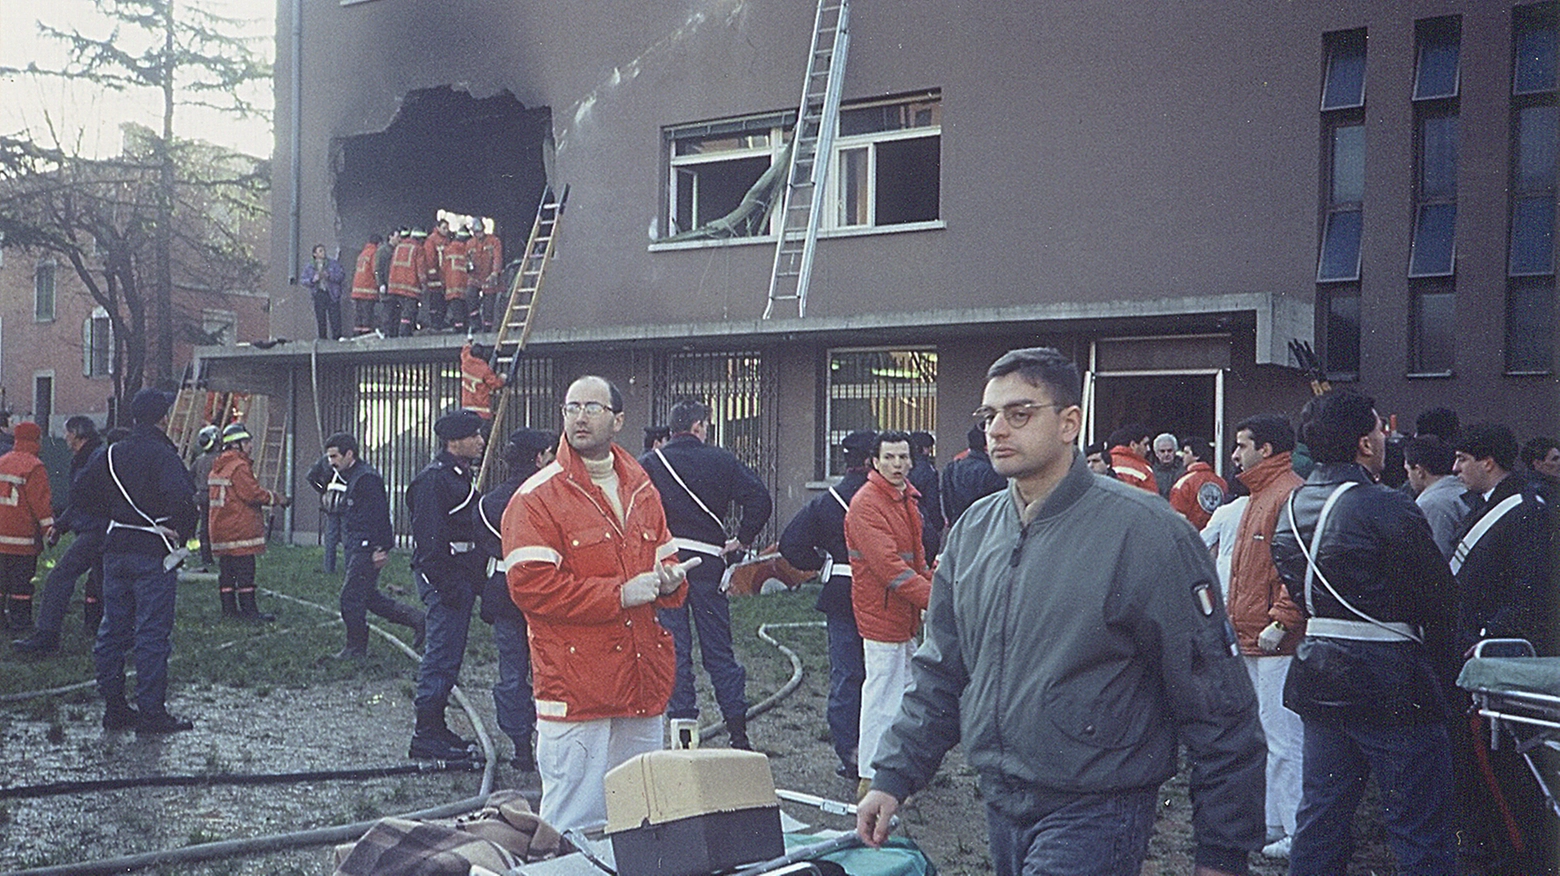 Nel 1990 un jet militare si schiantò contro l'istituto Salvemini a Casalecchio (foto Mele)